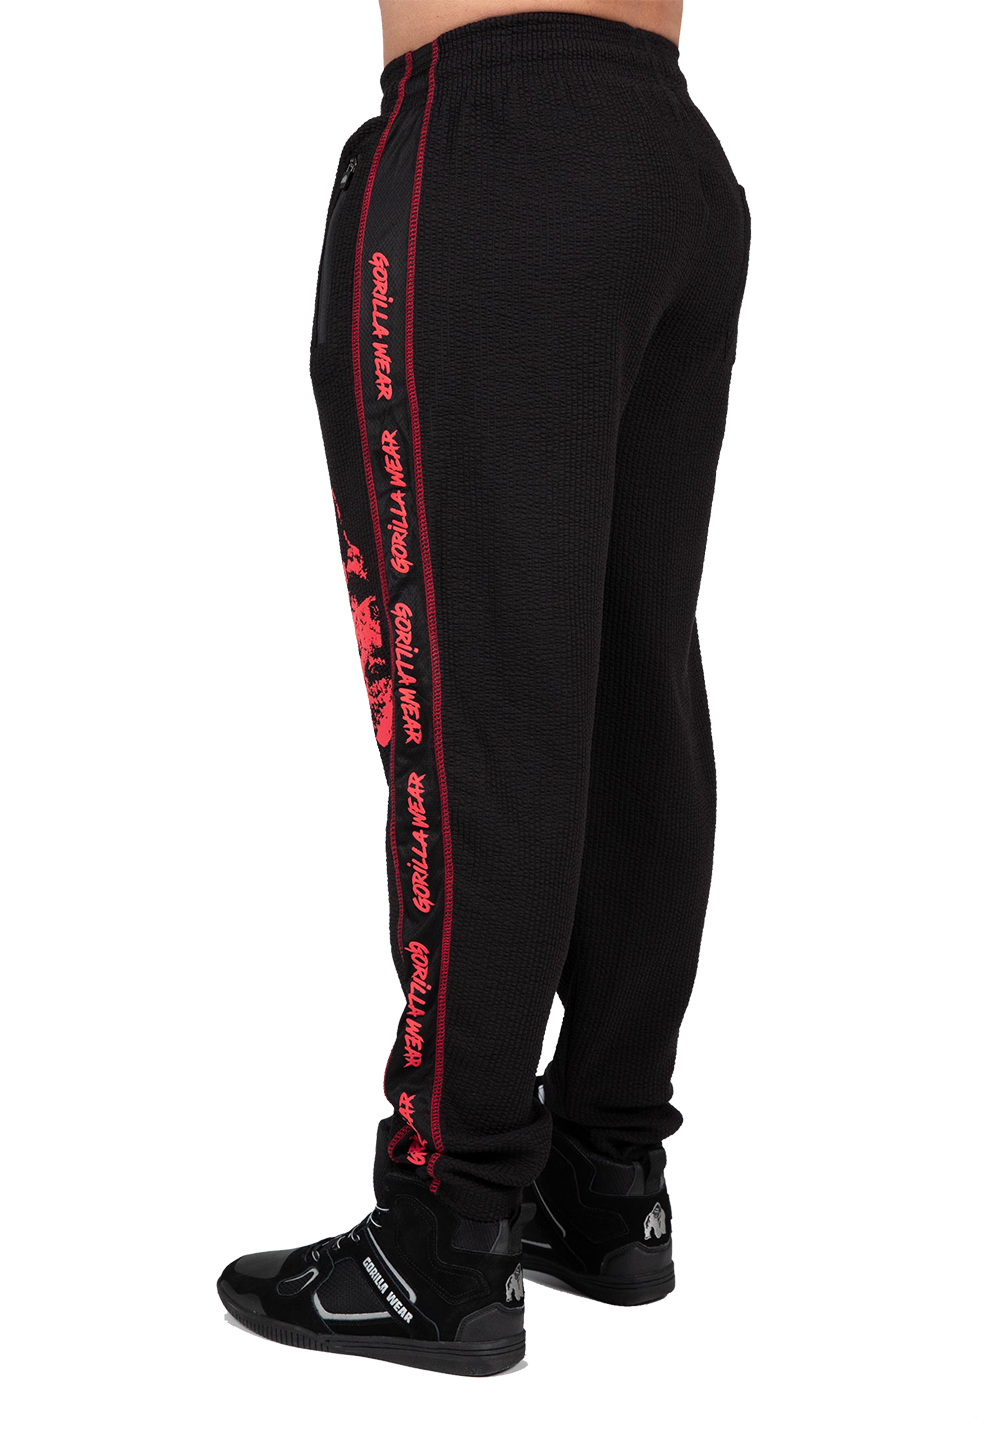 Штаны Buffalo Old School Workout Pants – Black/Red от Gorilla Wear